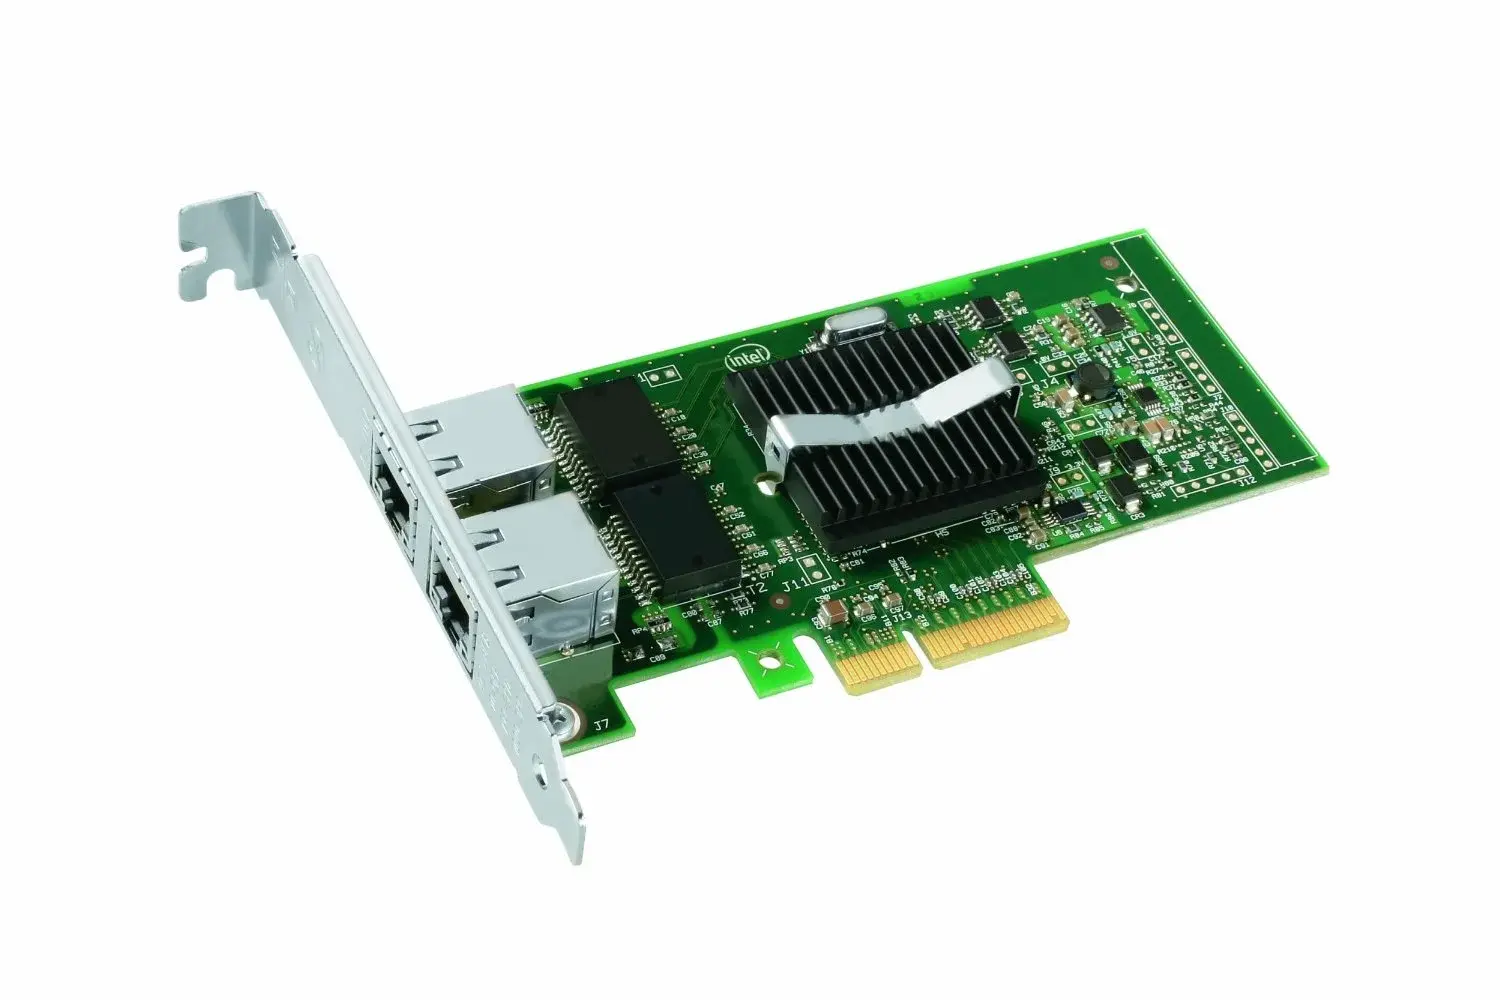 A91620 Intel 82546EB/82546GB PRO/1000MF SX Fiber Dual Port PCI-x Server Adapter